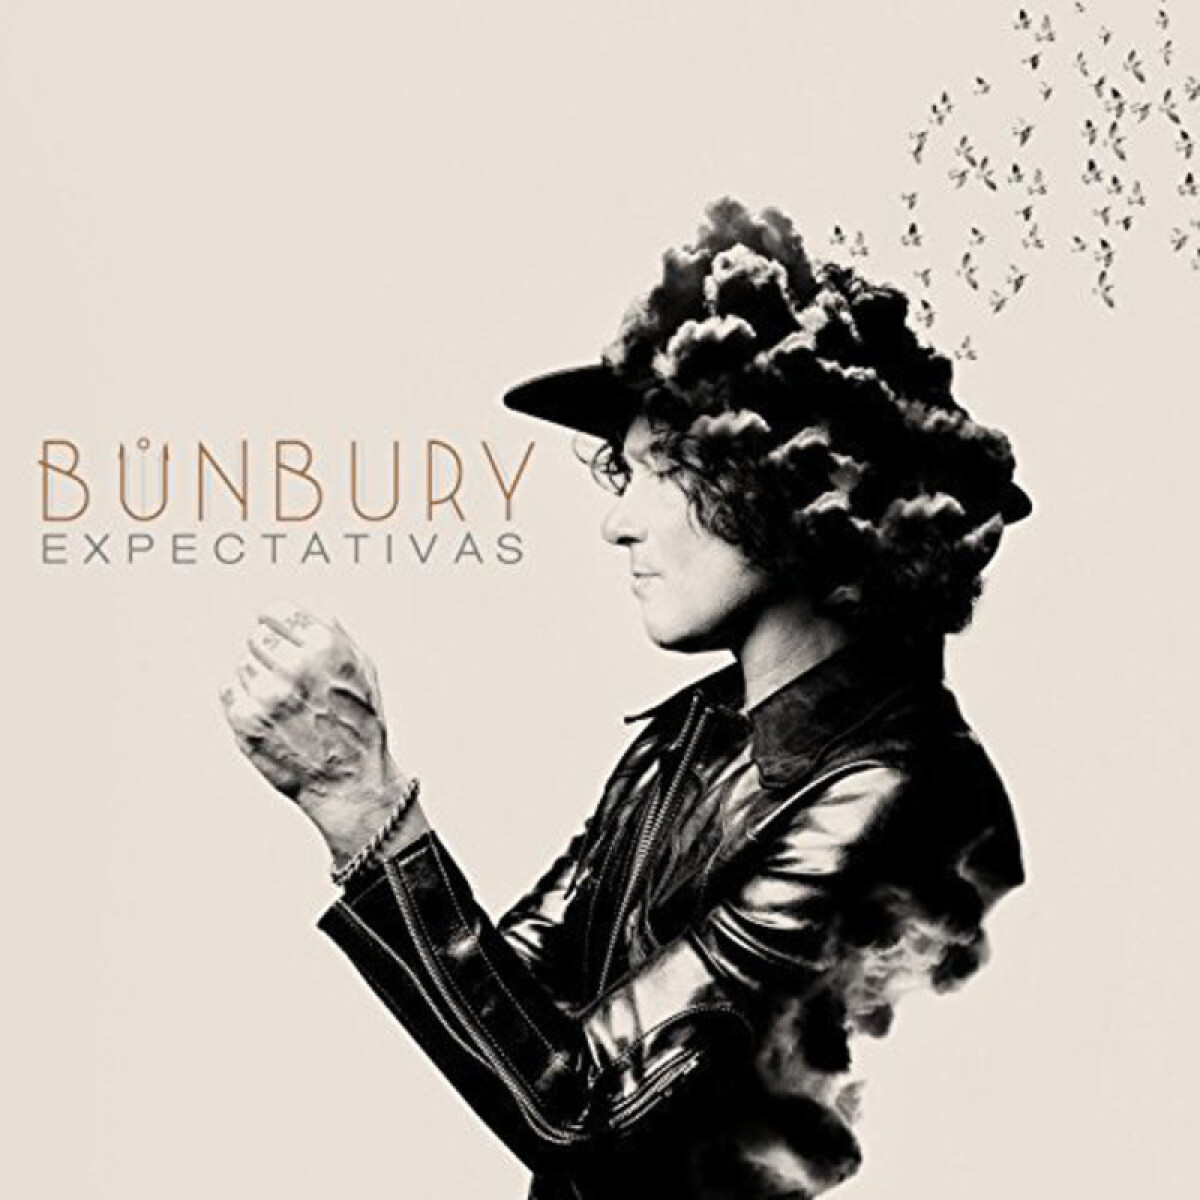 Bunbur - Expectativas 